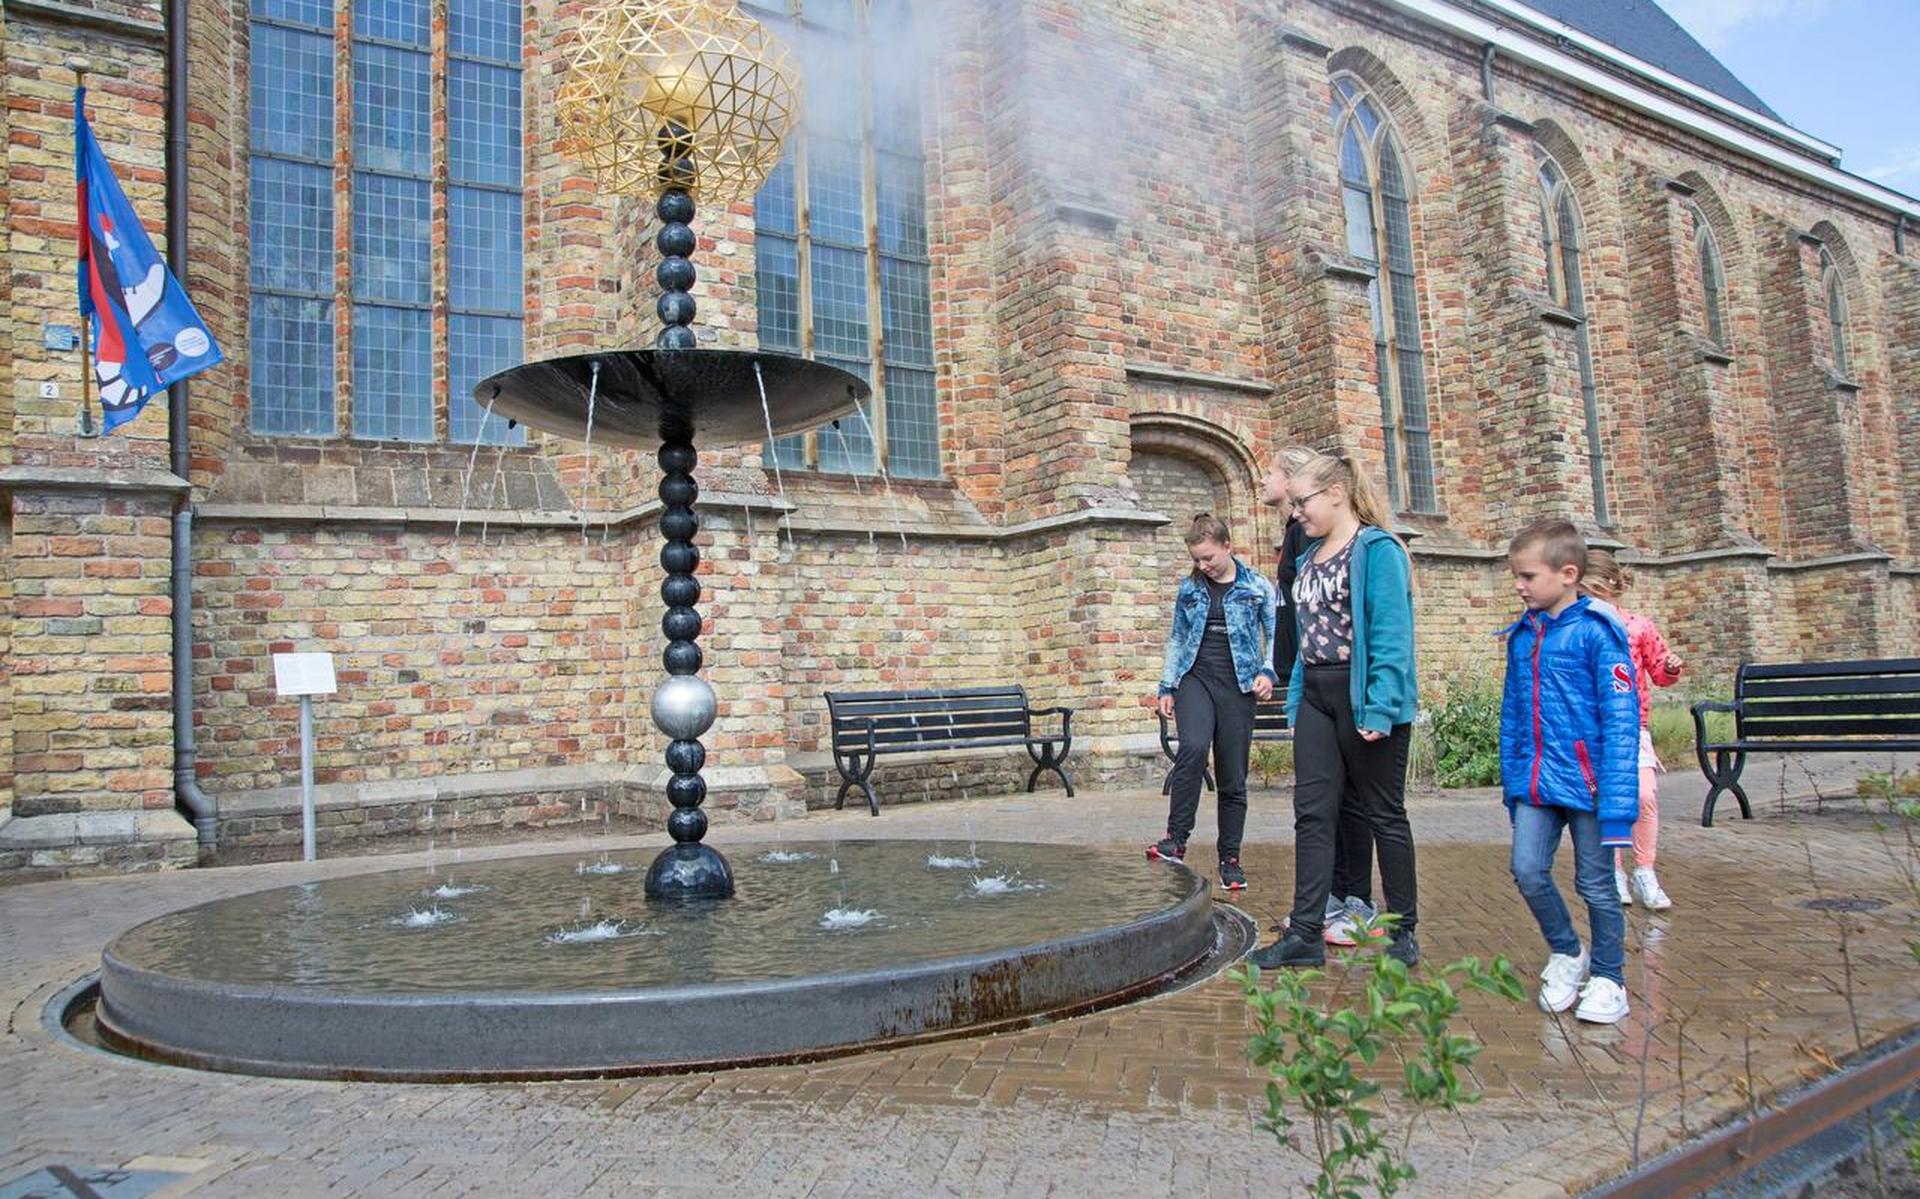 Quagga Compliment Bloesem Veel gespetter bij fontein Franeker, als je pech hebt kom je niet droog in  de kerk - Friesch Dagblad